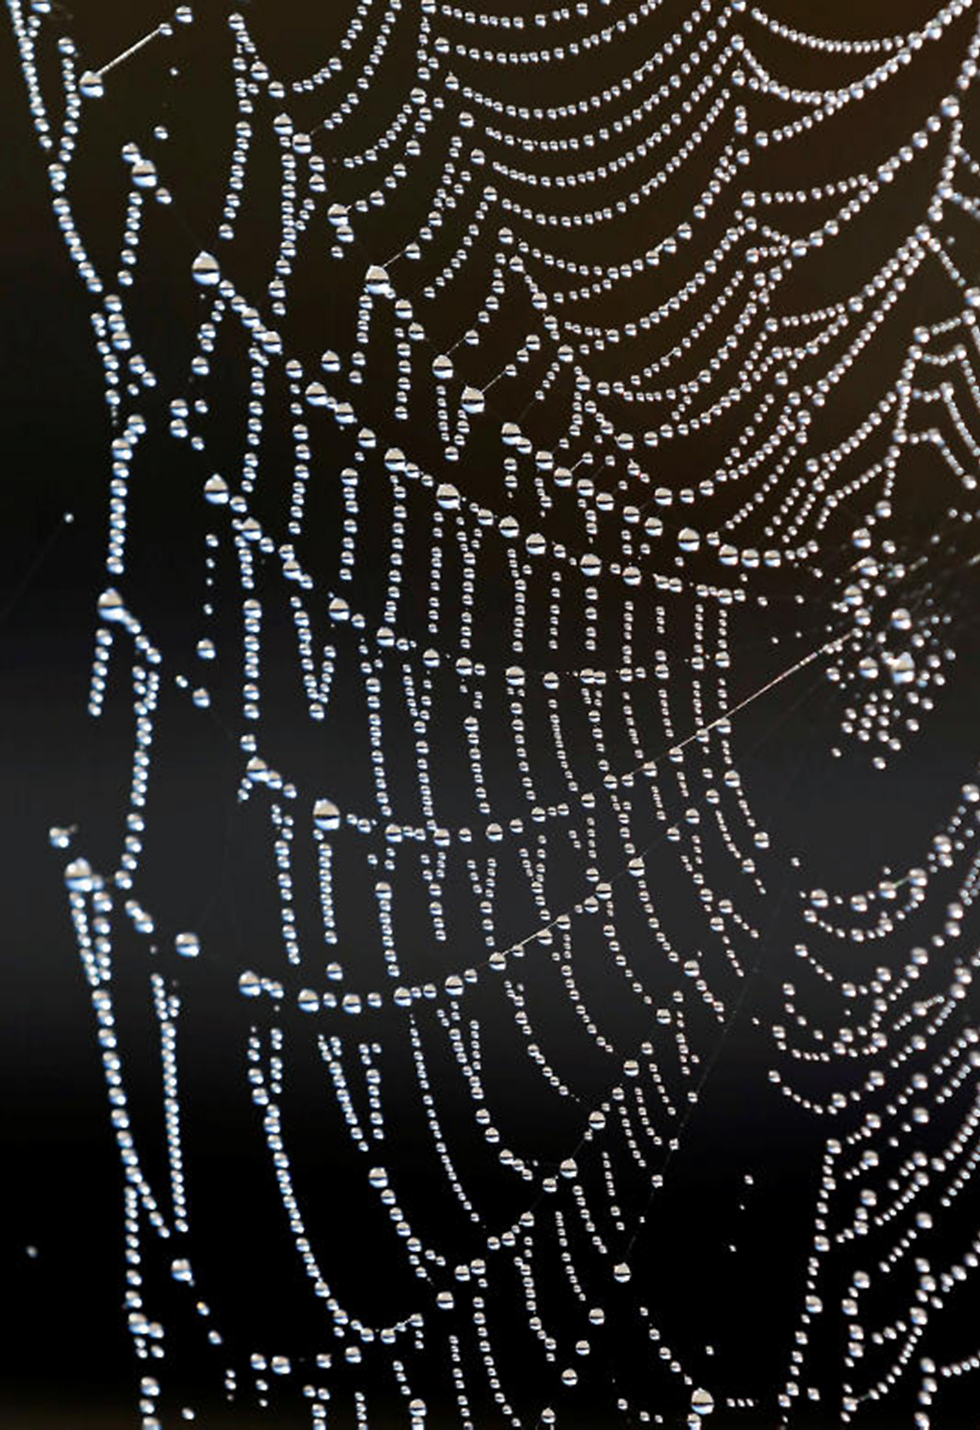 טיפות מים על קורי עכביש בשאטו לה לובייר באזור לאוניין שבדרום-מערב צרפת (צילום: רויטרס) (צילום: רויטרס)